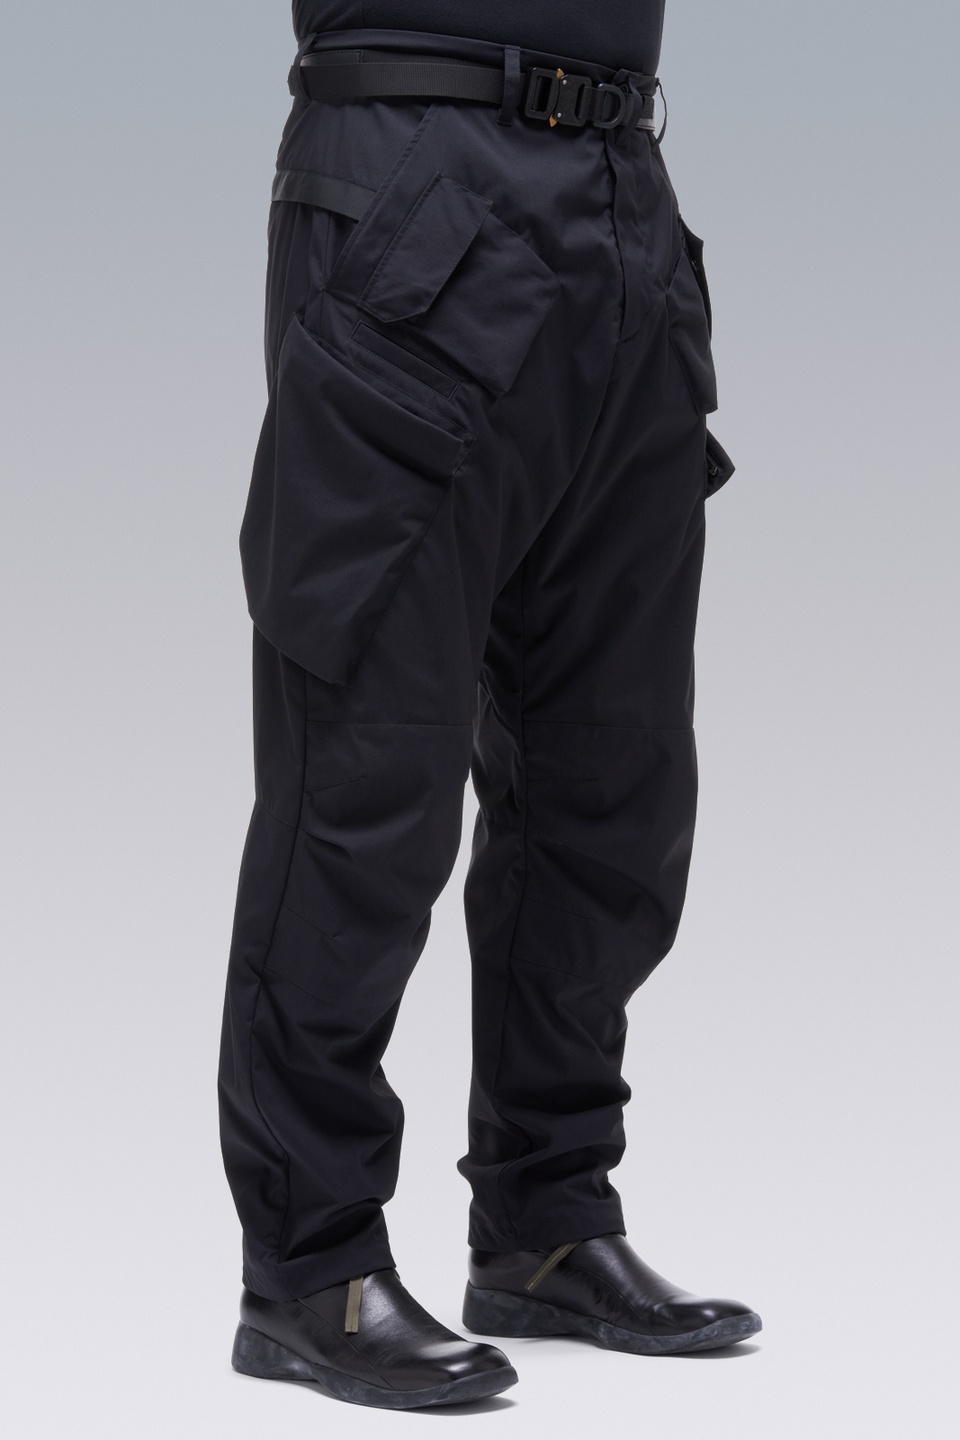 P24A-E Encapsulated Nylon Articulated BDU Trouser Black - 3